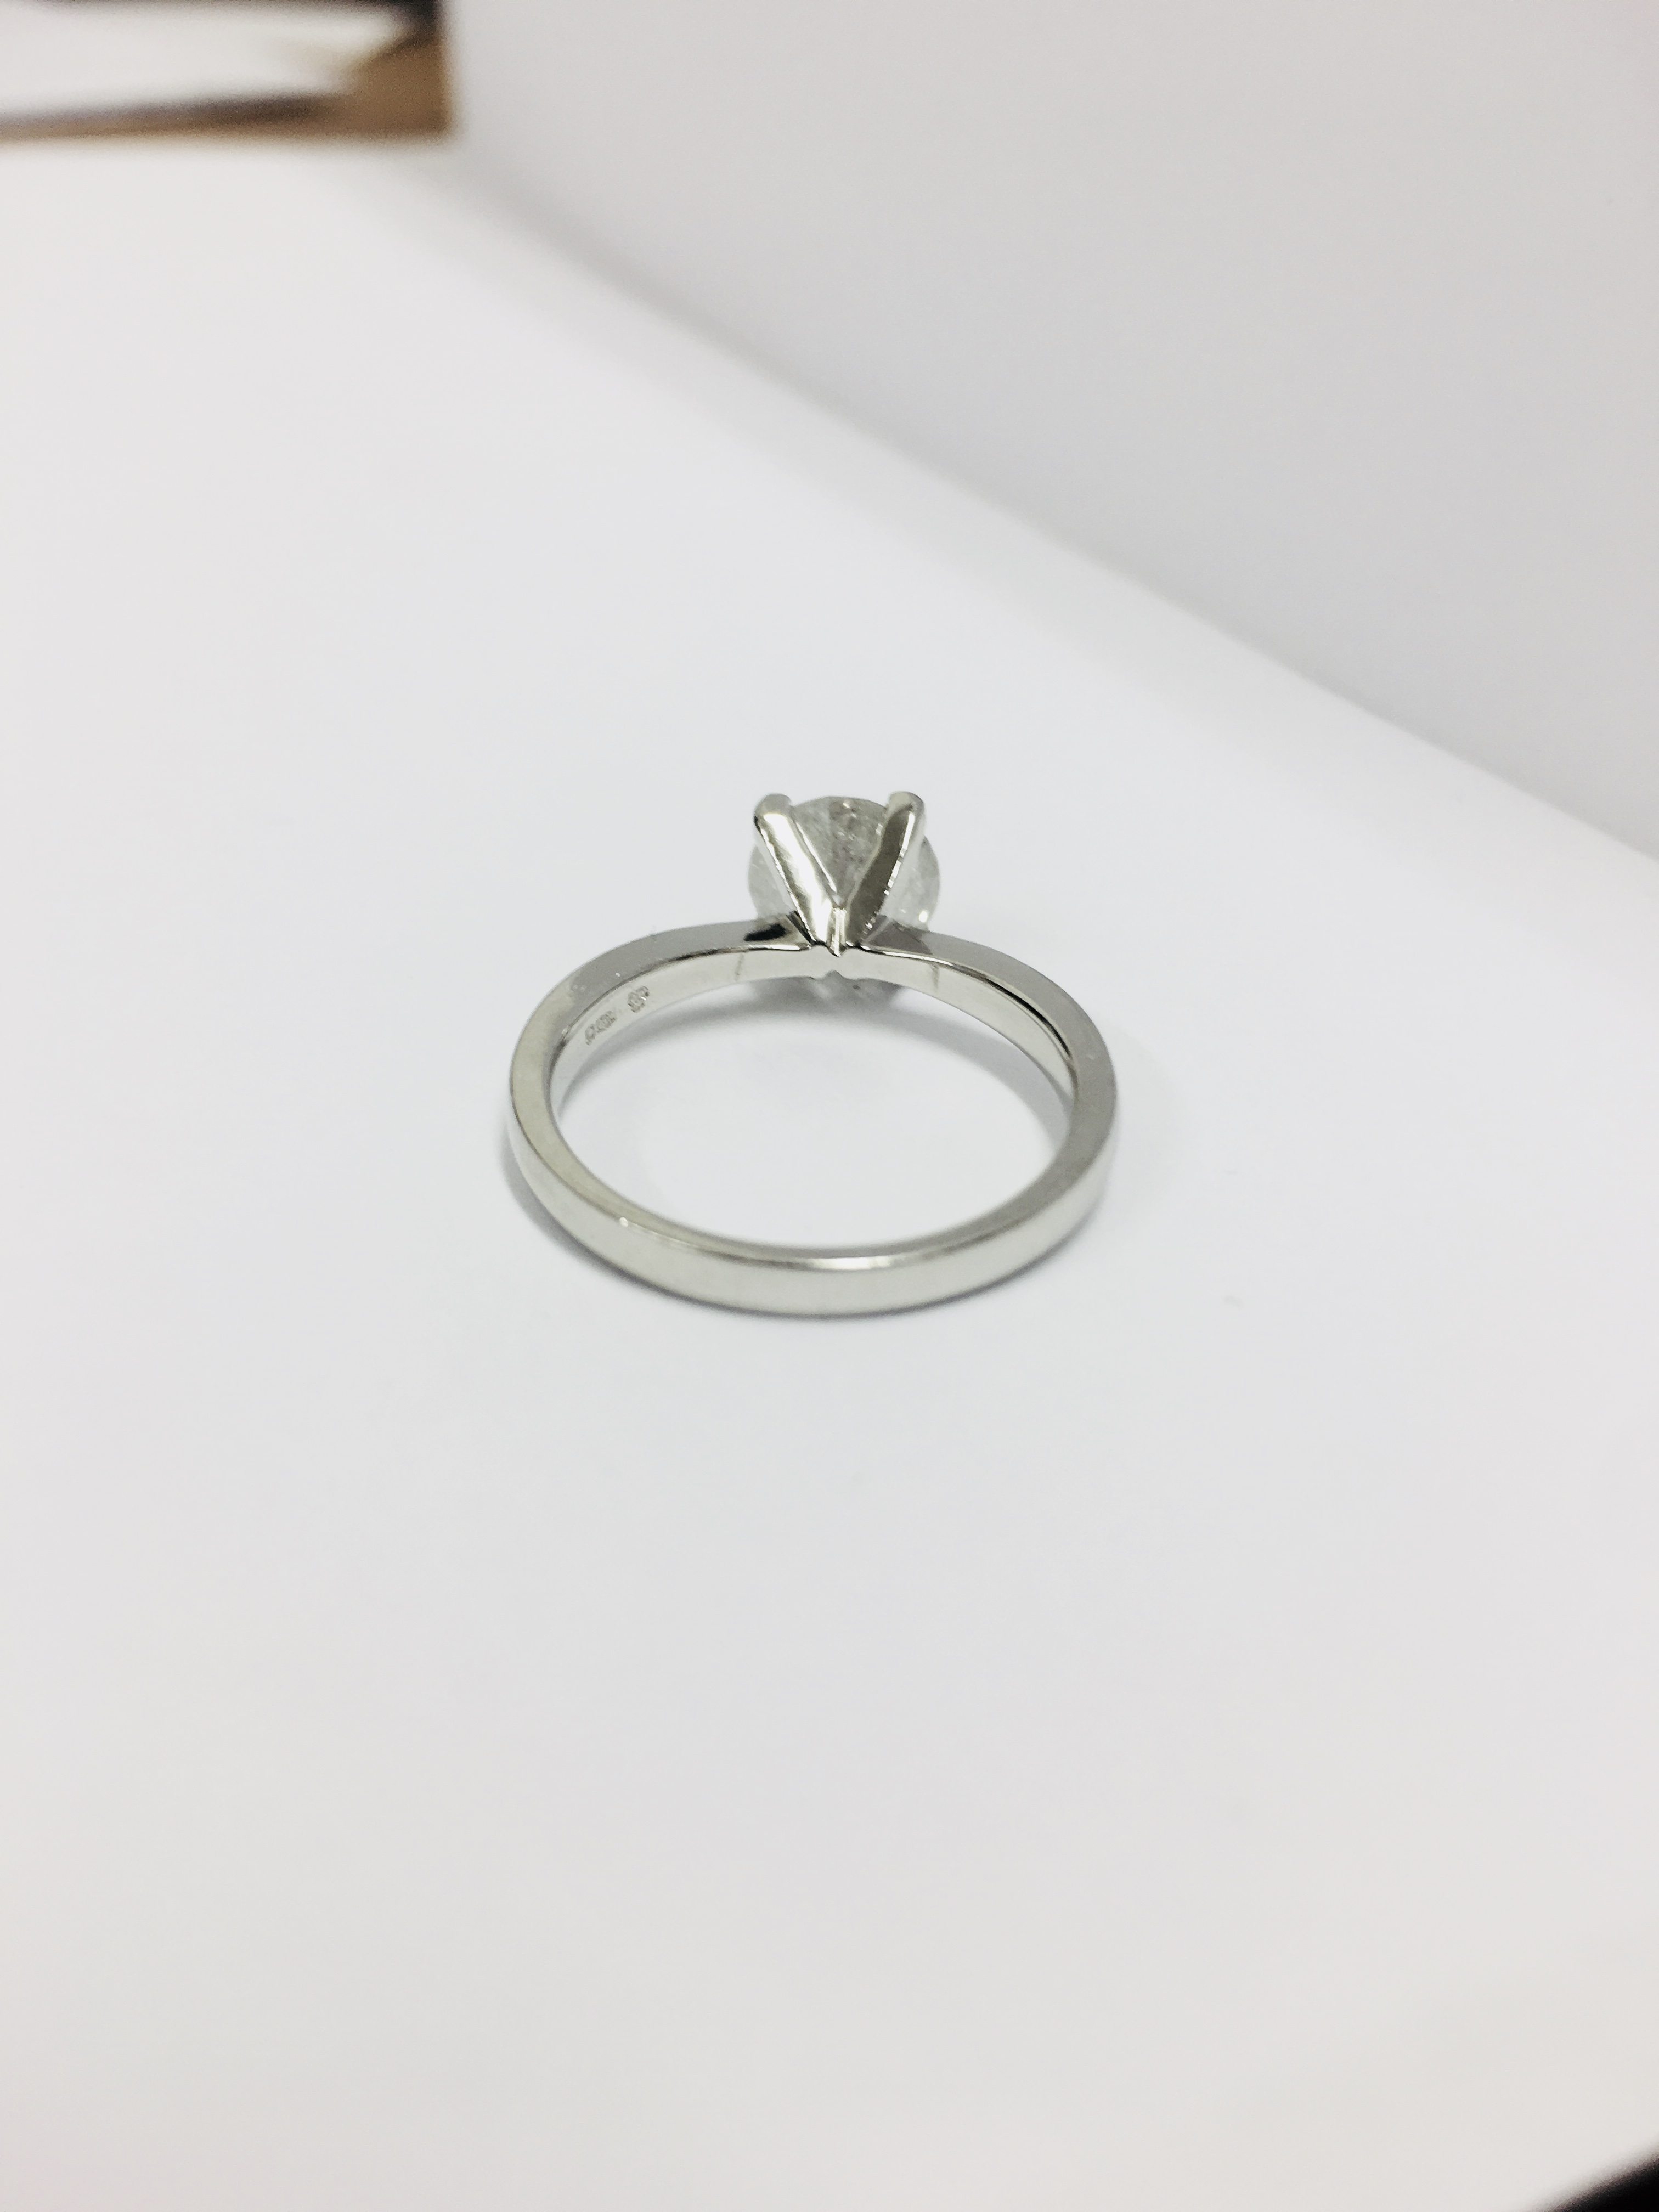 2.08ct diamond solitaire ring set in platinum - Image 35 of 48